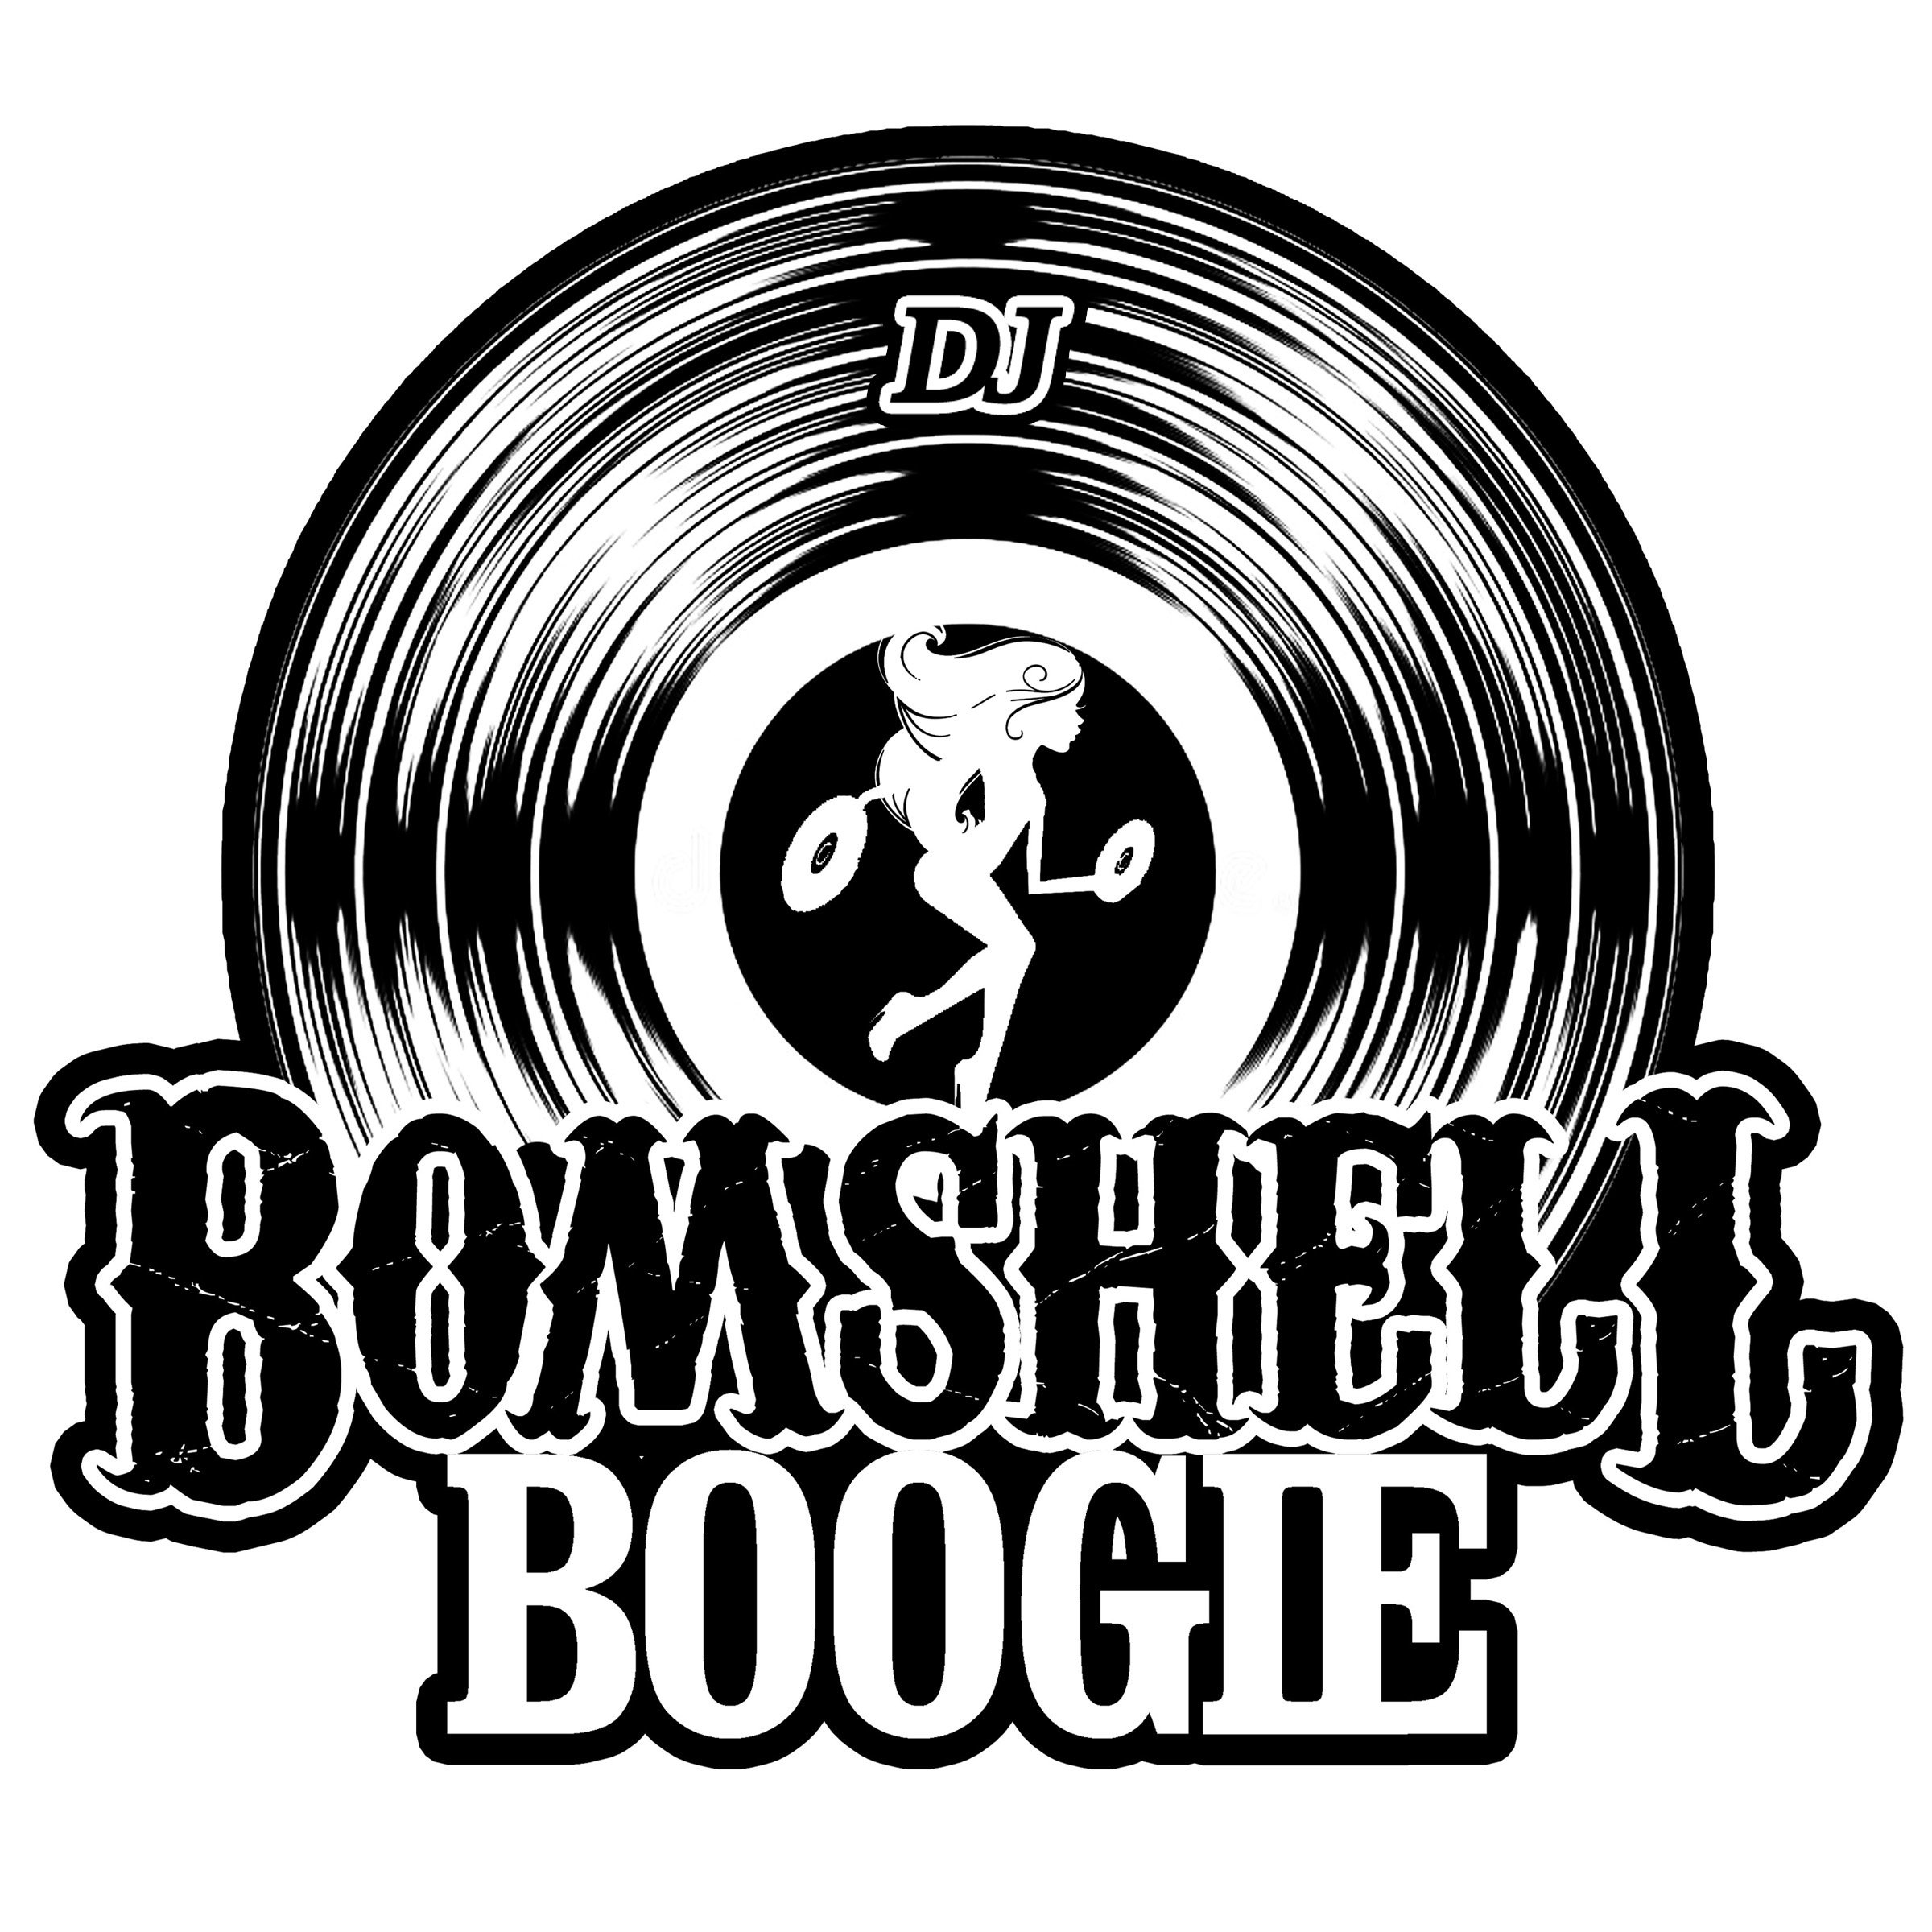 DJ BOMSHELL BOOGIE